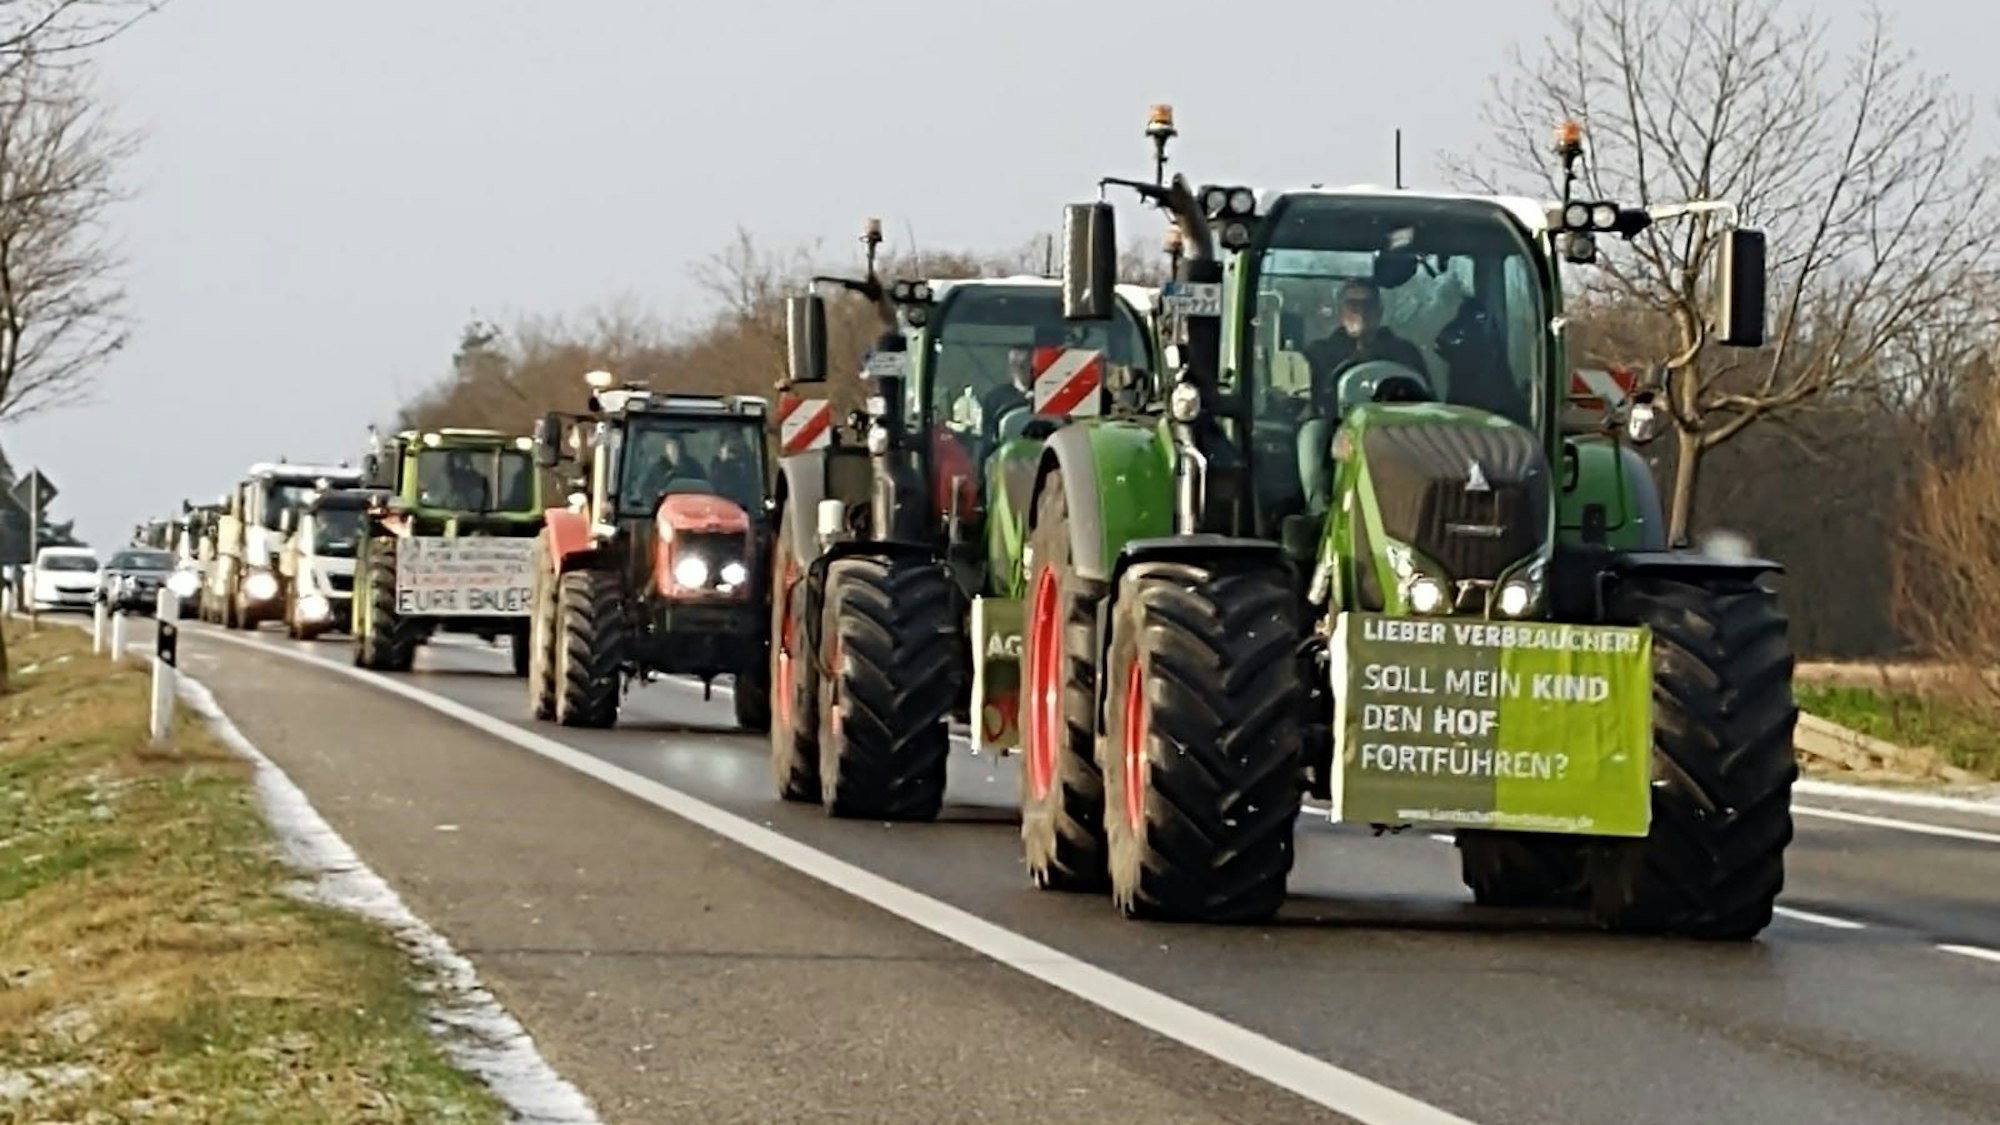 Traktoren mit Protestplakaten fahren auf der B266, dahinter ist eine Autokolonne.